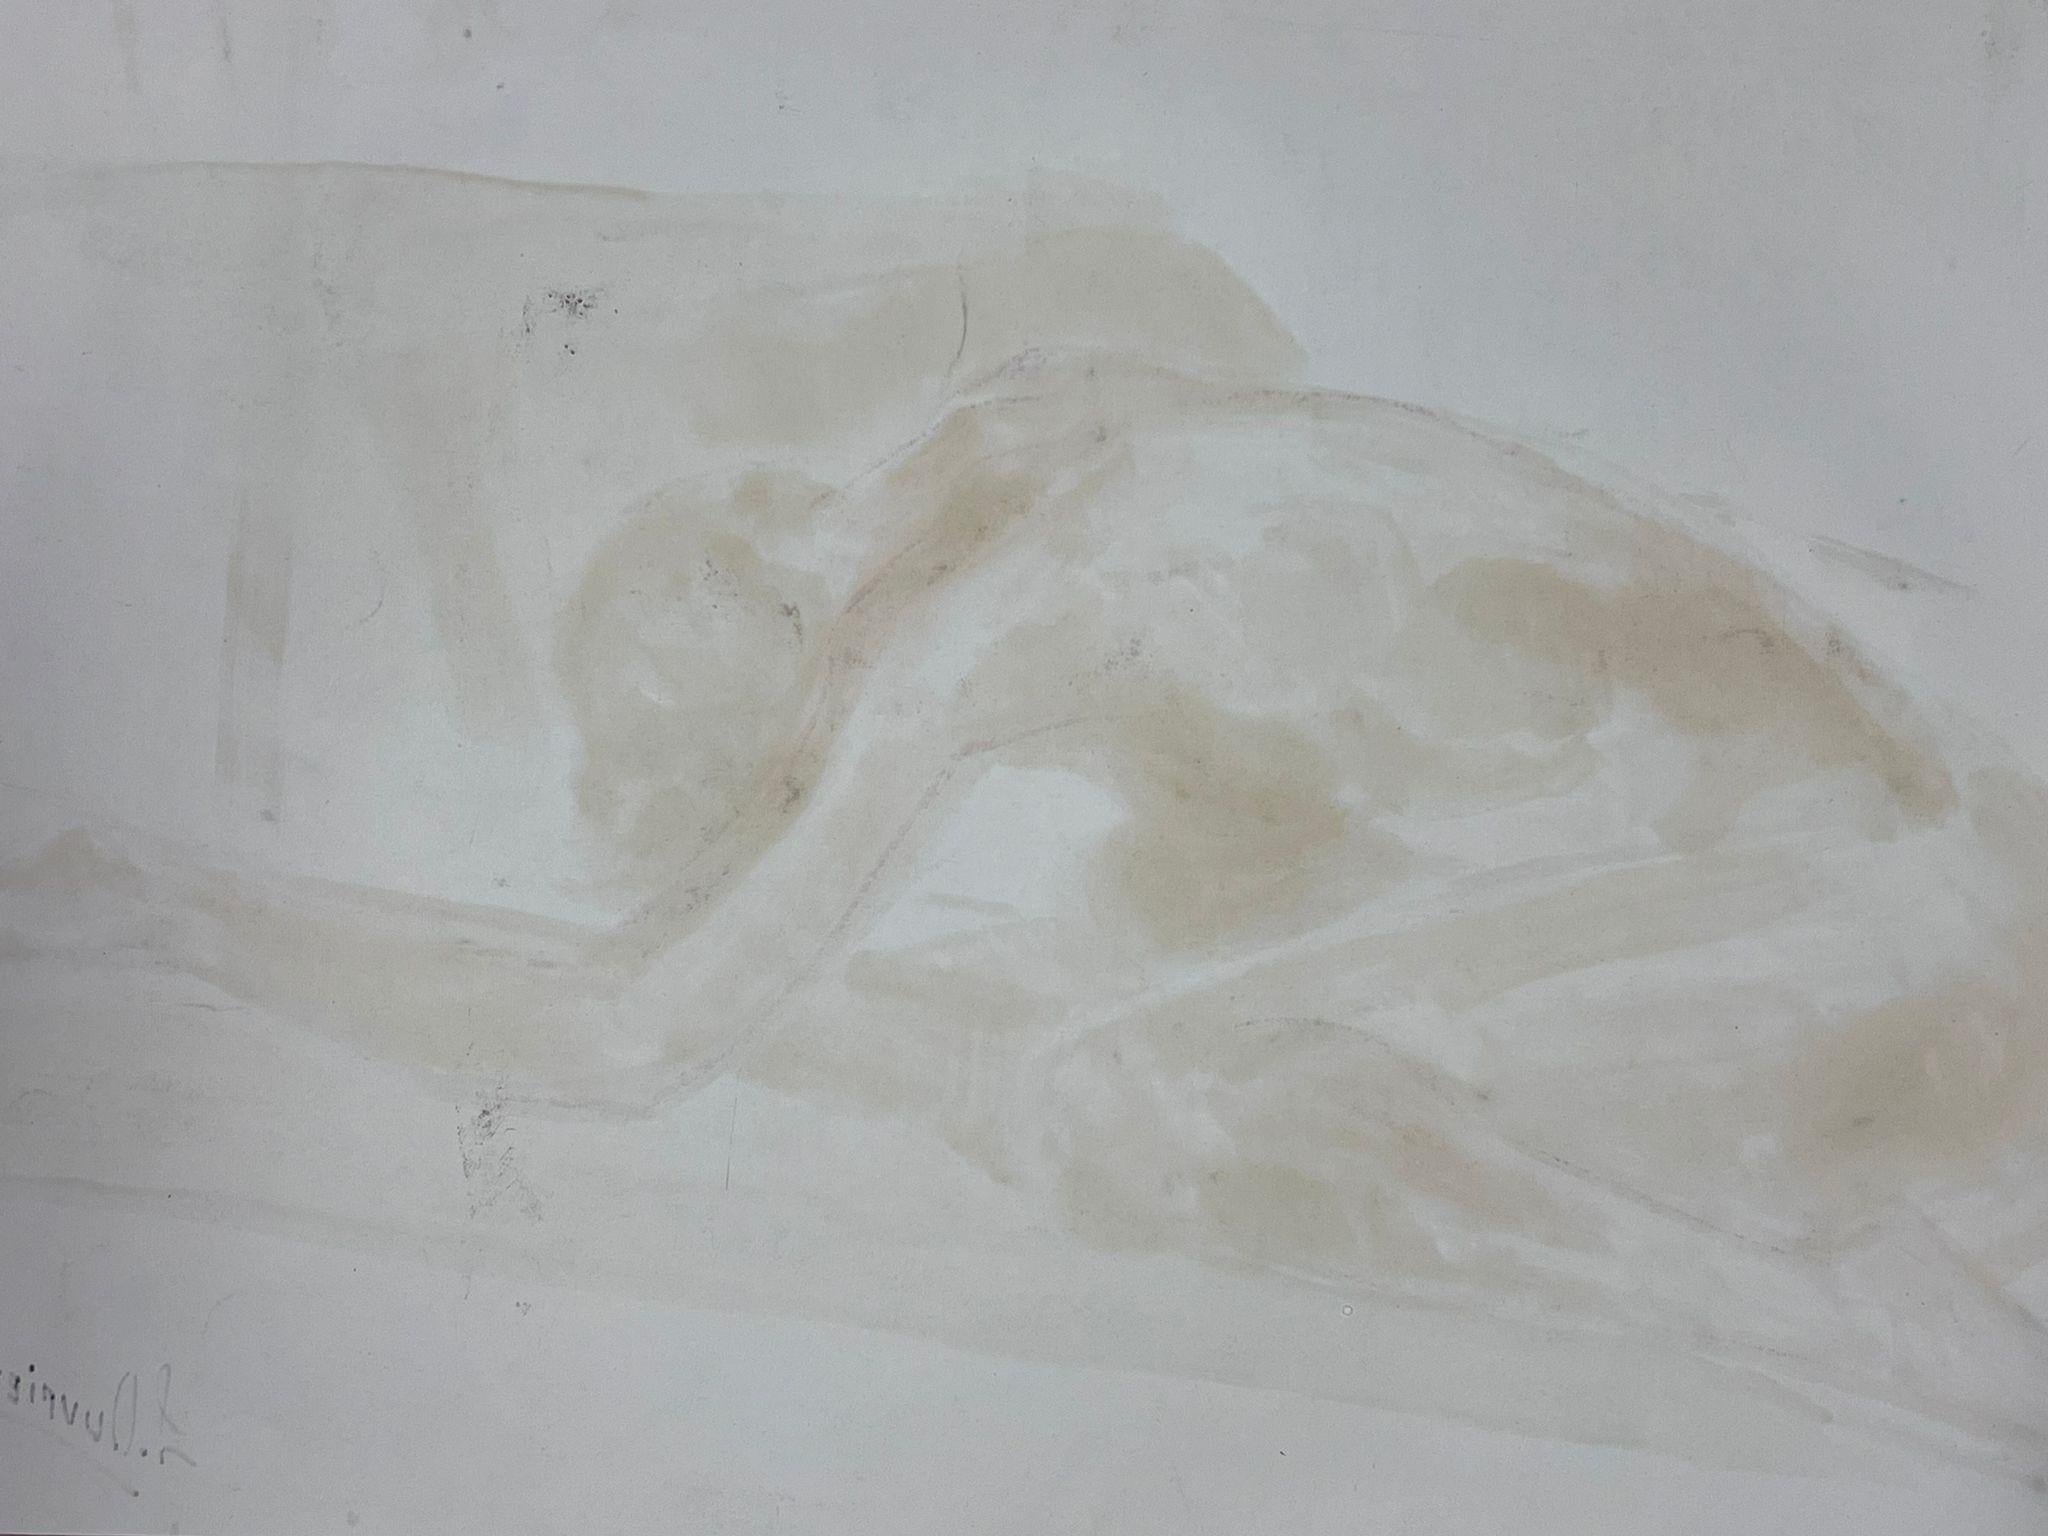 Le modèle Artistics
Femme nue modèle
École française, vers 1970  
peinture à l'huile sur carton, signée, non encadrée
taille : 17 x 24.5 pouces
état : globalement très bon, quelques légères marques à la surface mais rien de préjudiciable à l'attrait